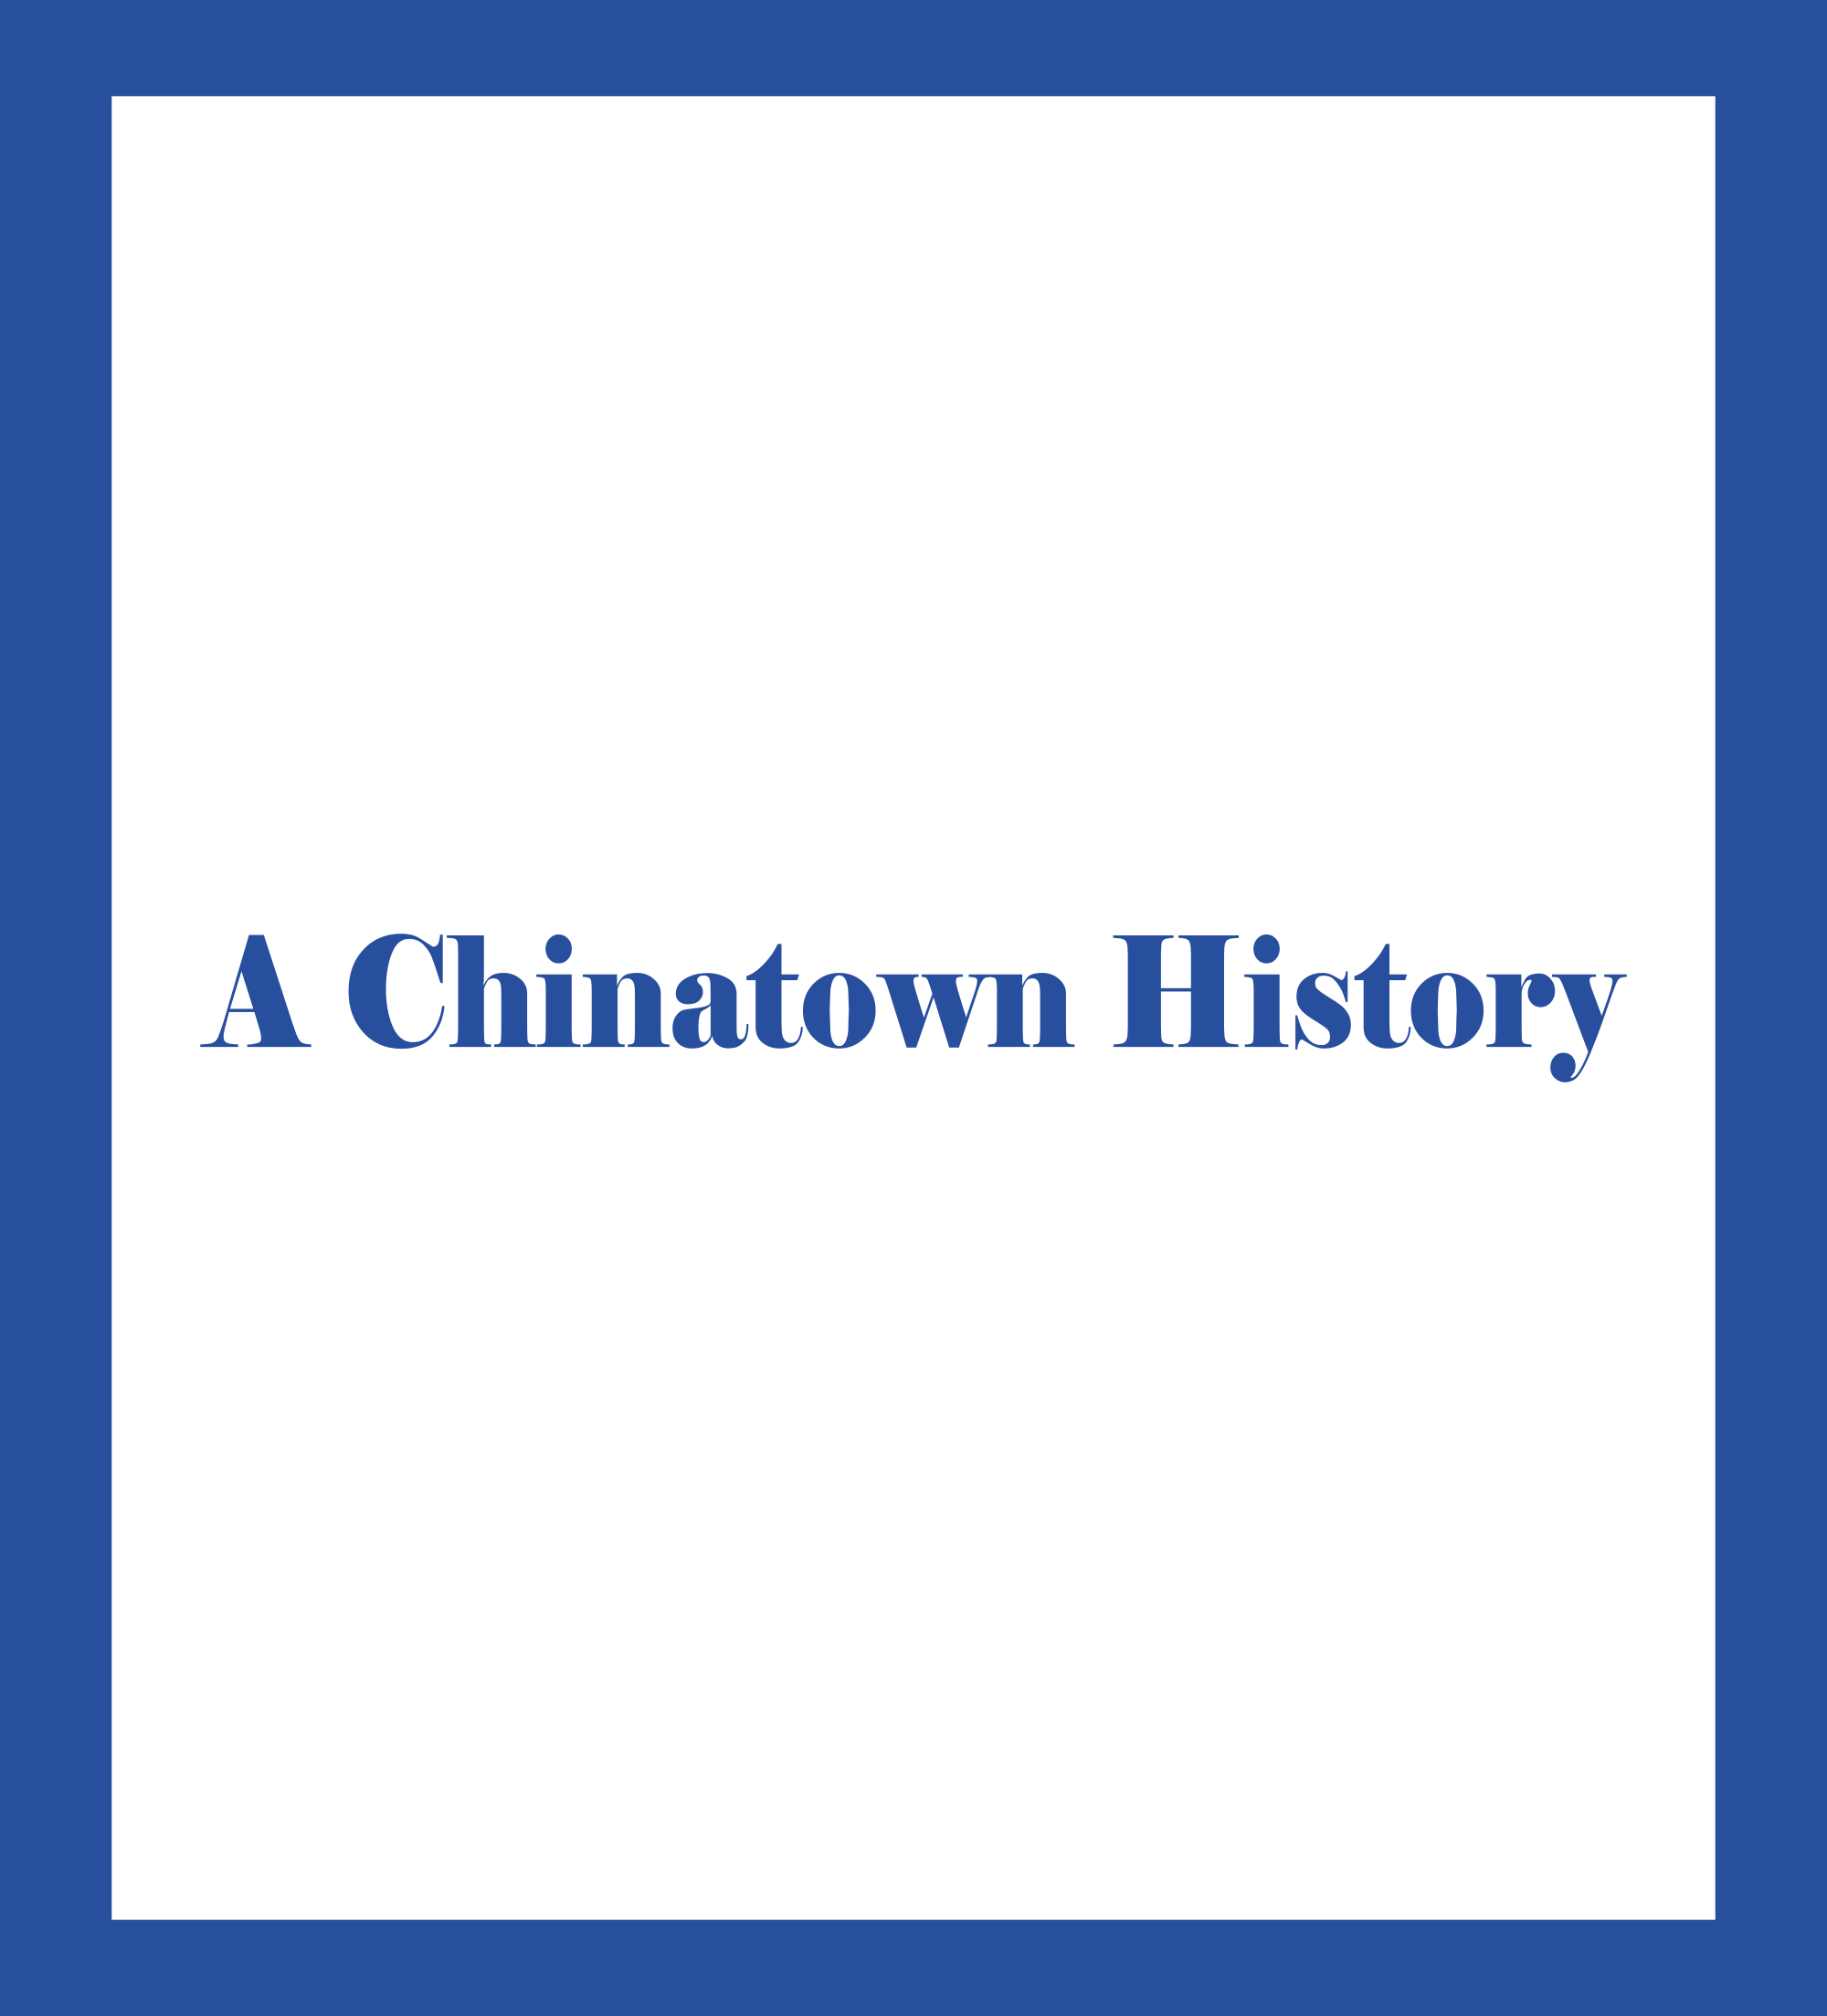 Una historia de Chinatown